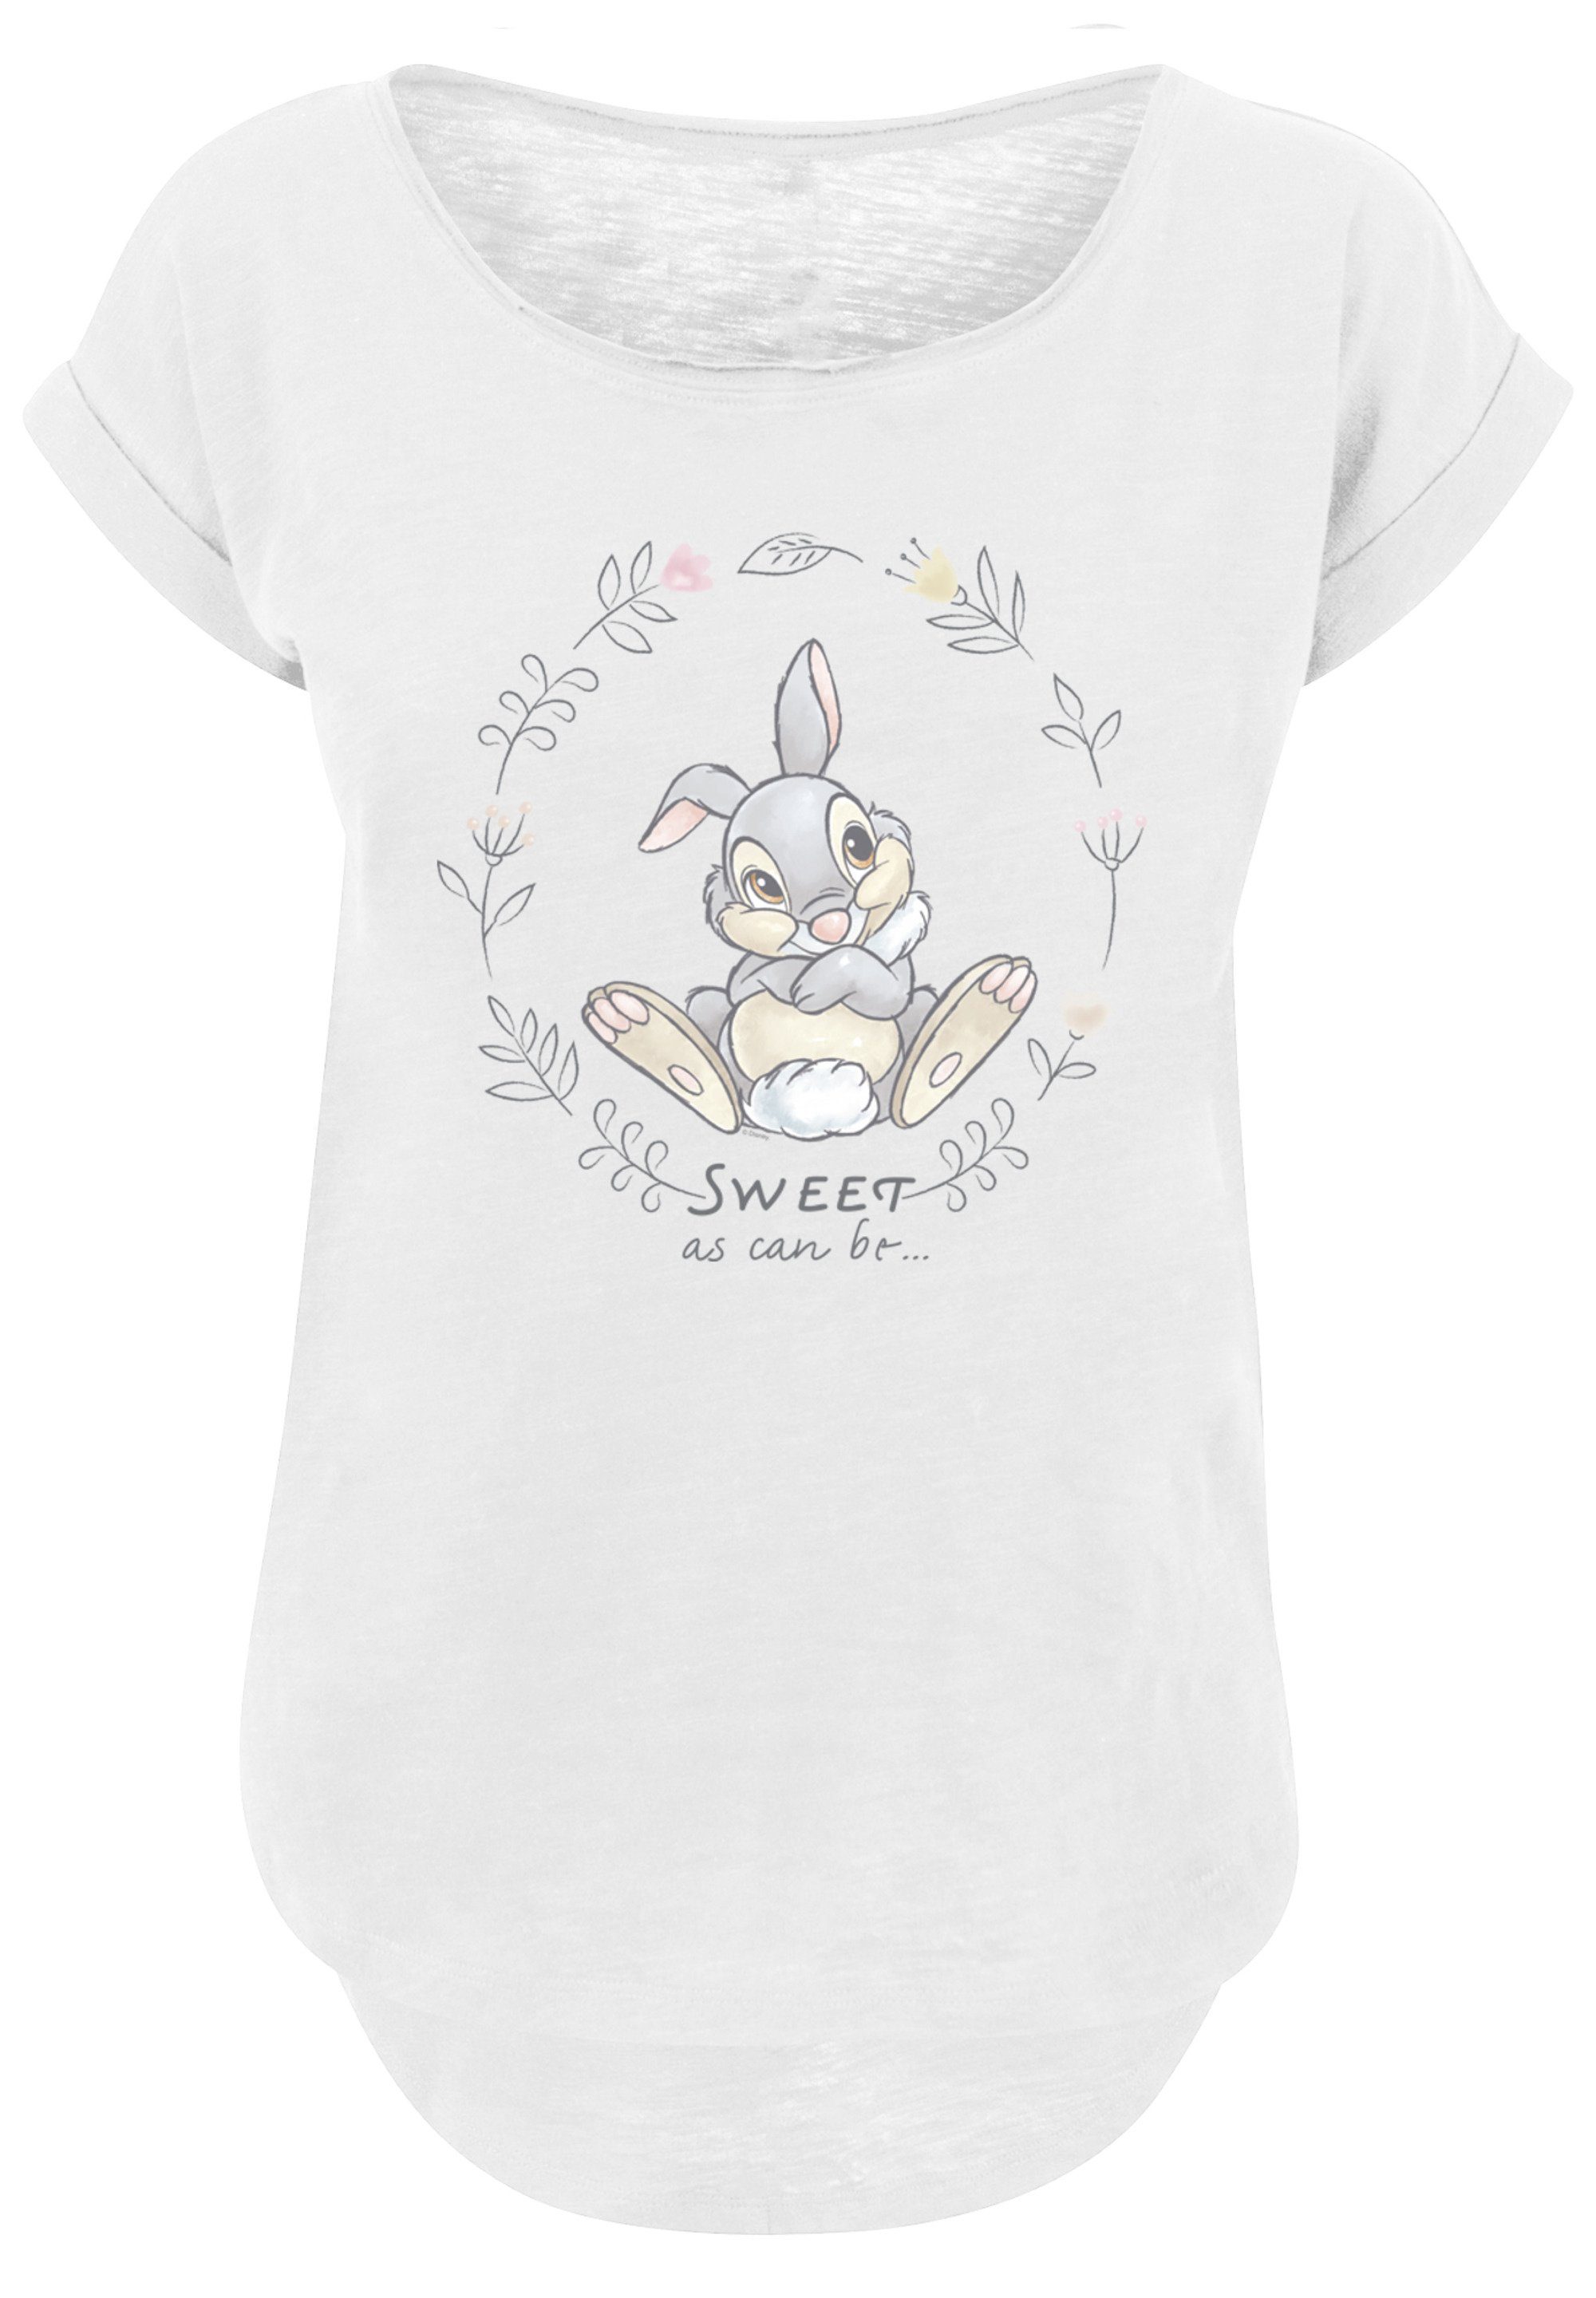 As lang Print, Sweet Hinten Damen Can extra geschnittenes Klopfer Bambi T-Shirt Be T-Shirt F4NT4STIC Disney Thumper